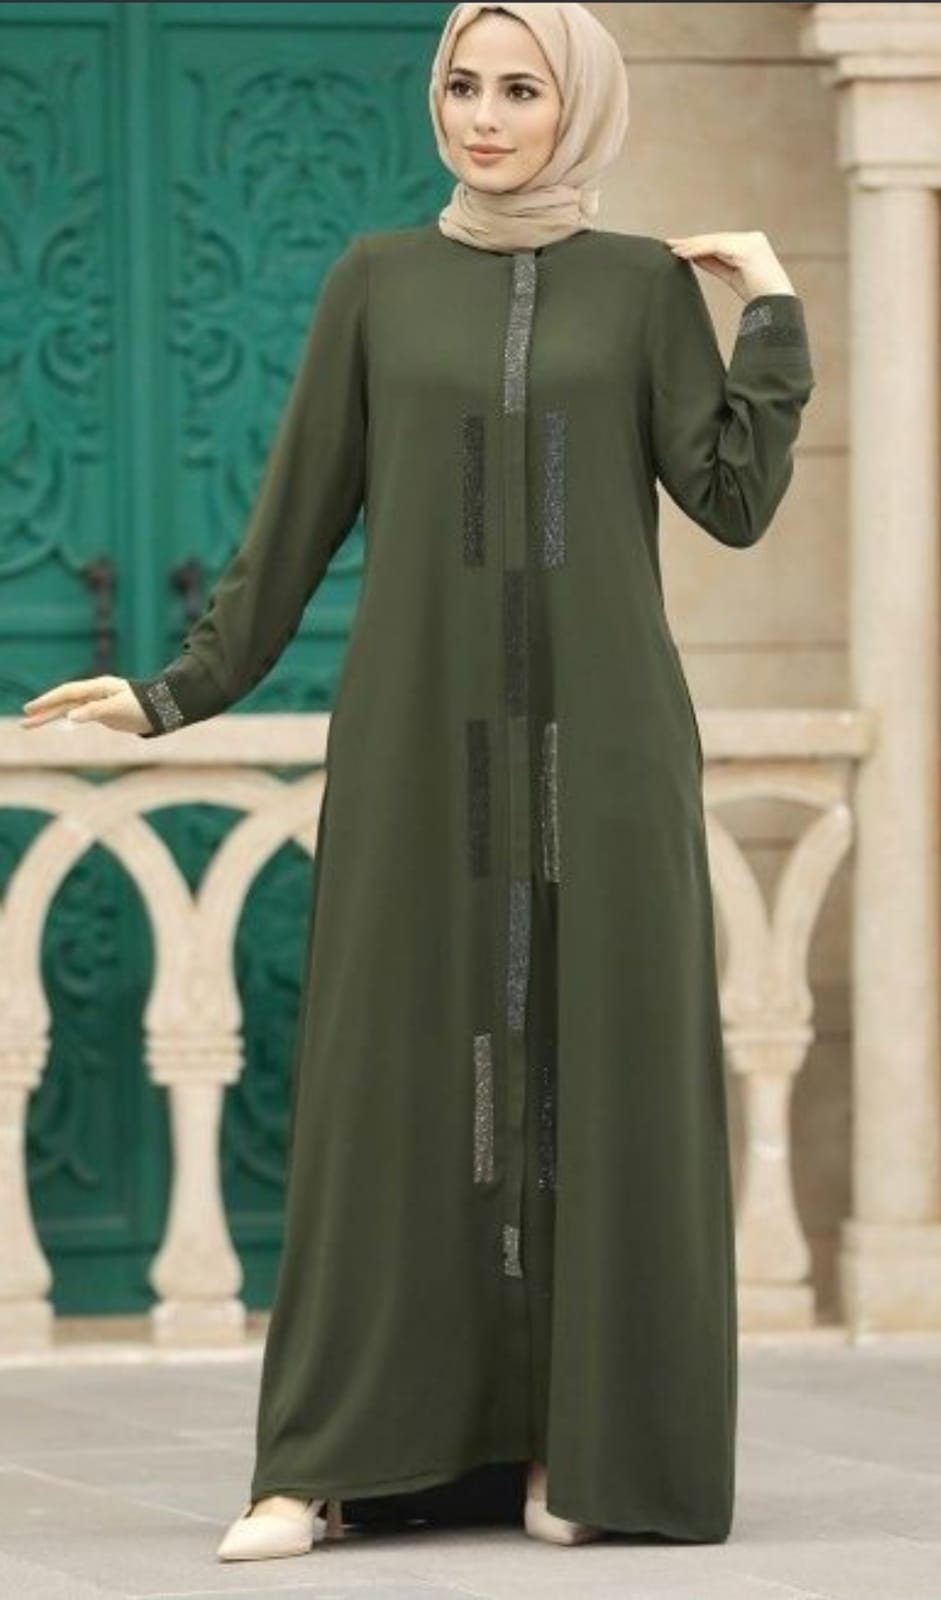 Samaira's Zenith Cloak Abaya